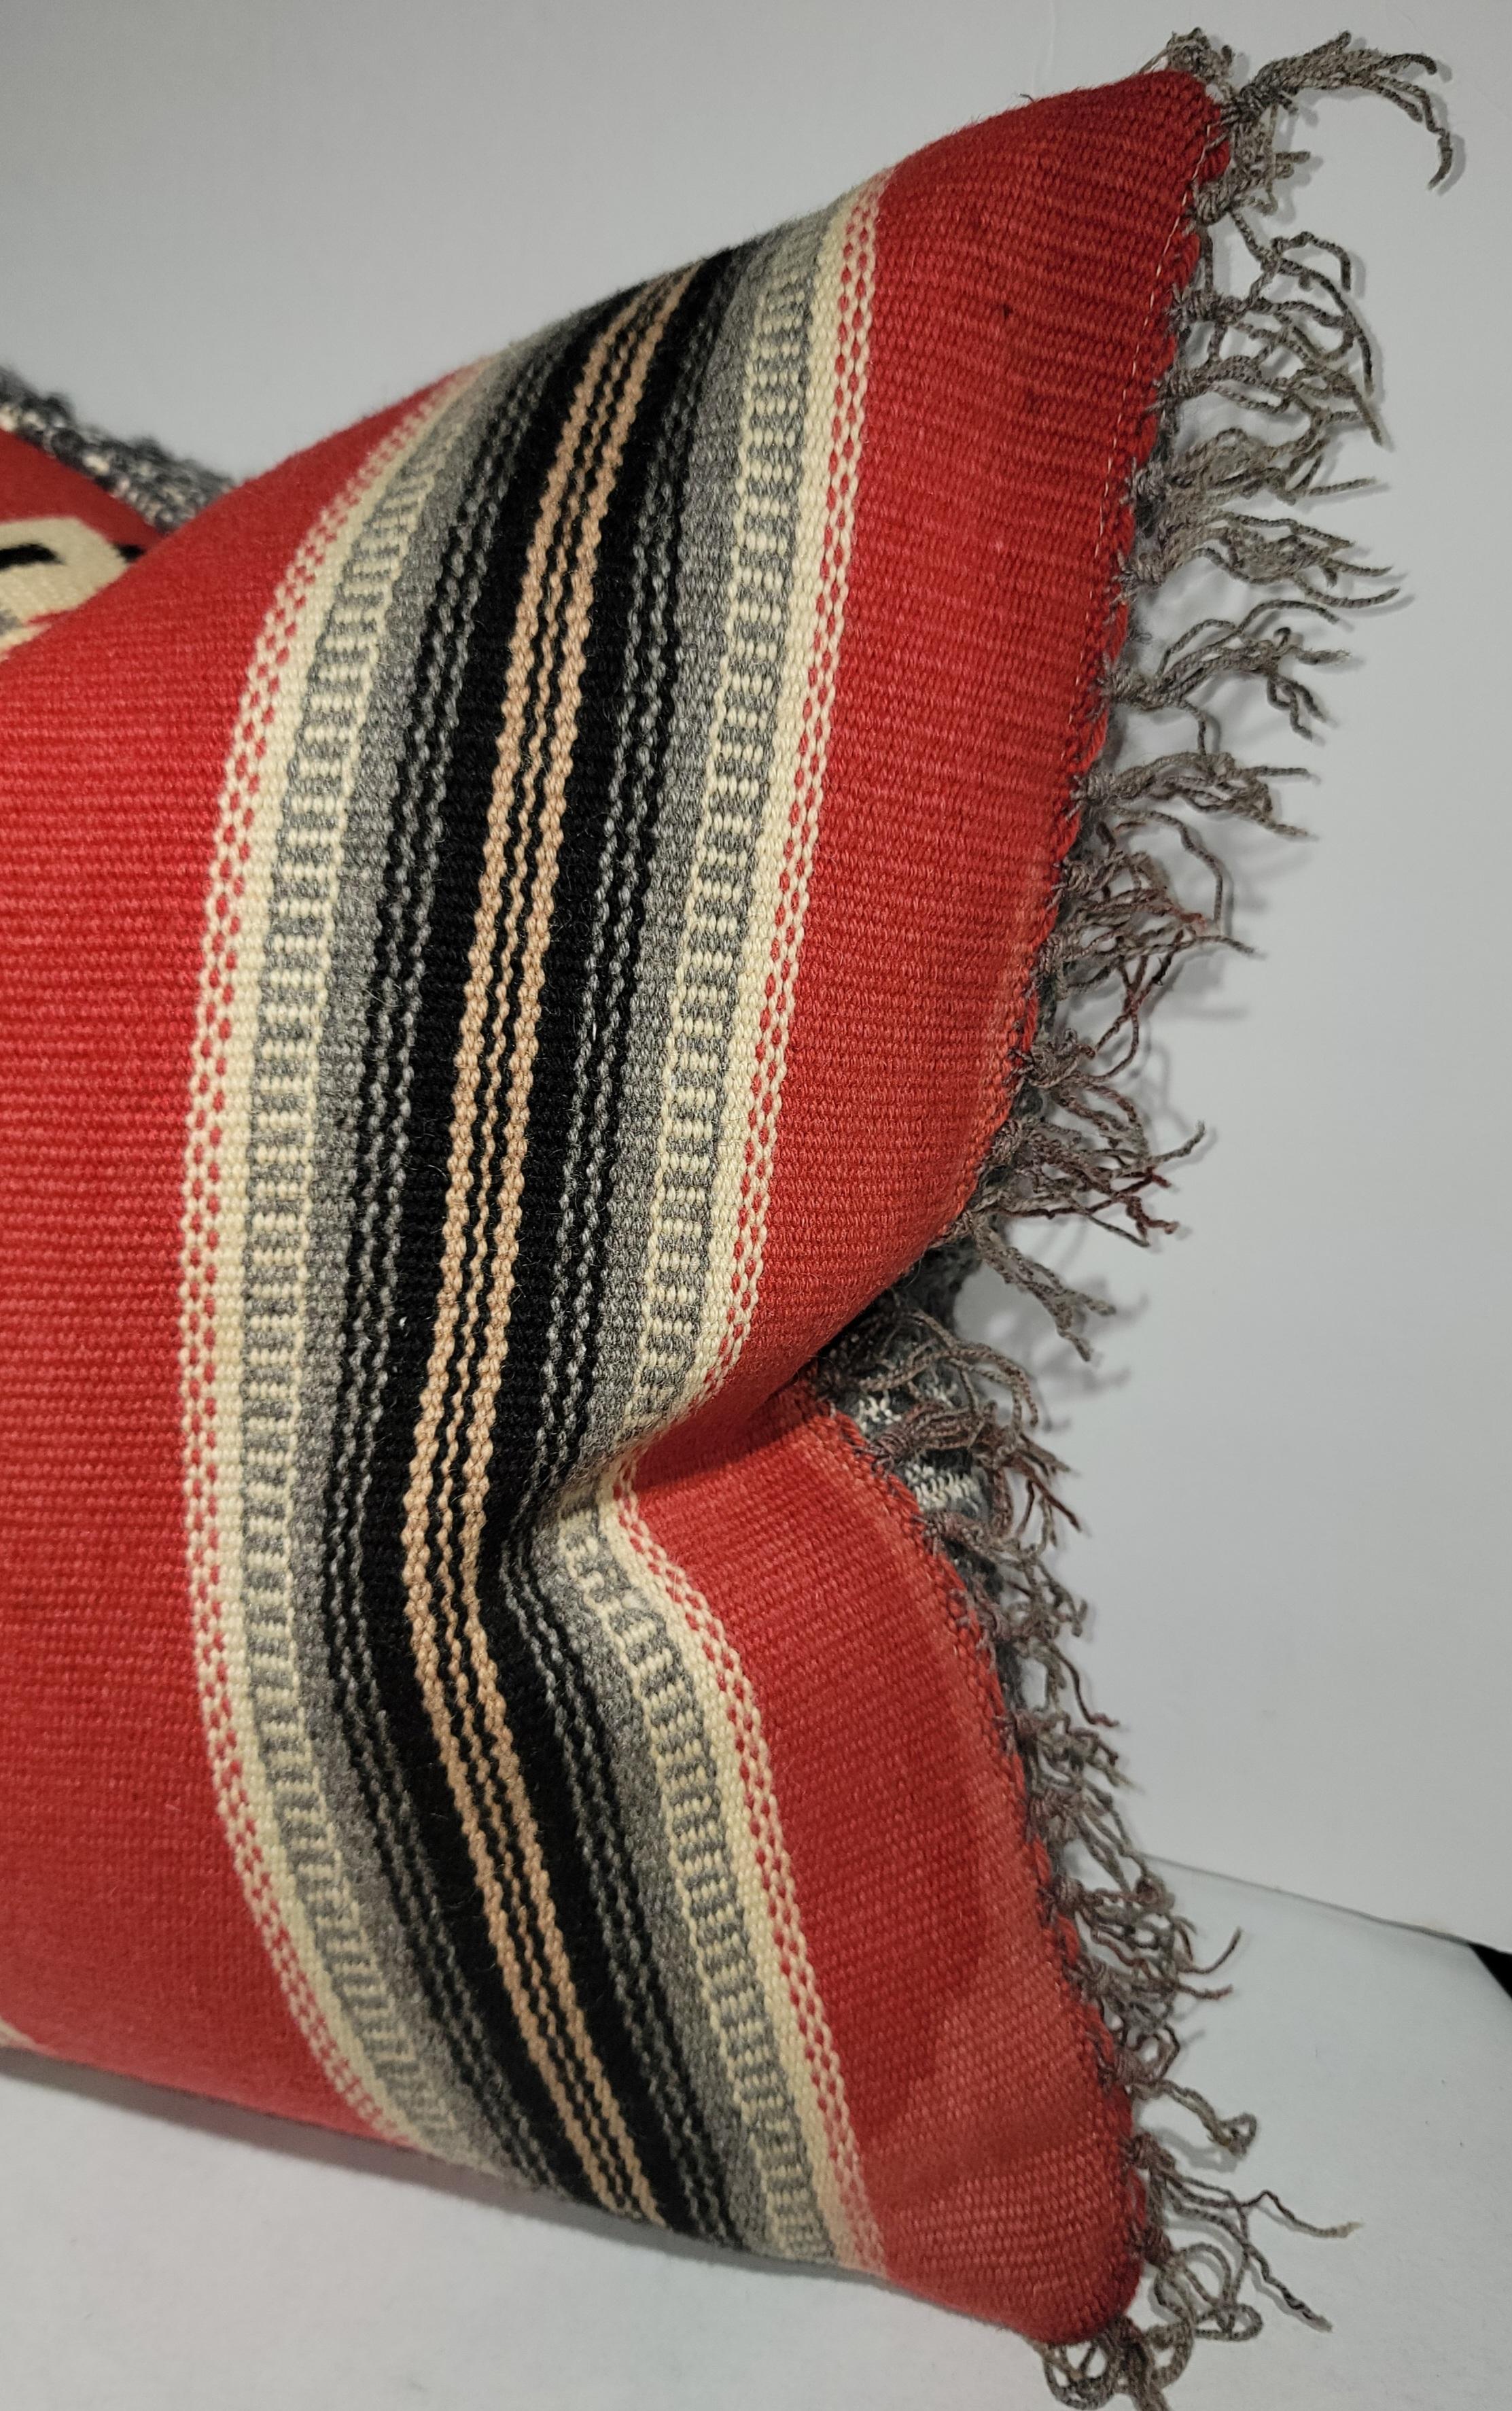 Mexikanisch-indianisches Wollserenape-Kissen mit Fransen und Wollrücken. Dieses All wool-Kissen hat sowohl eine helle als auch eine neutrale Seite. Die Rottöne sind gut sichtbar, während die graue, dunkelbraune und weiße Farbpalette die Rottöne zu